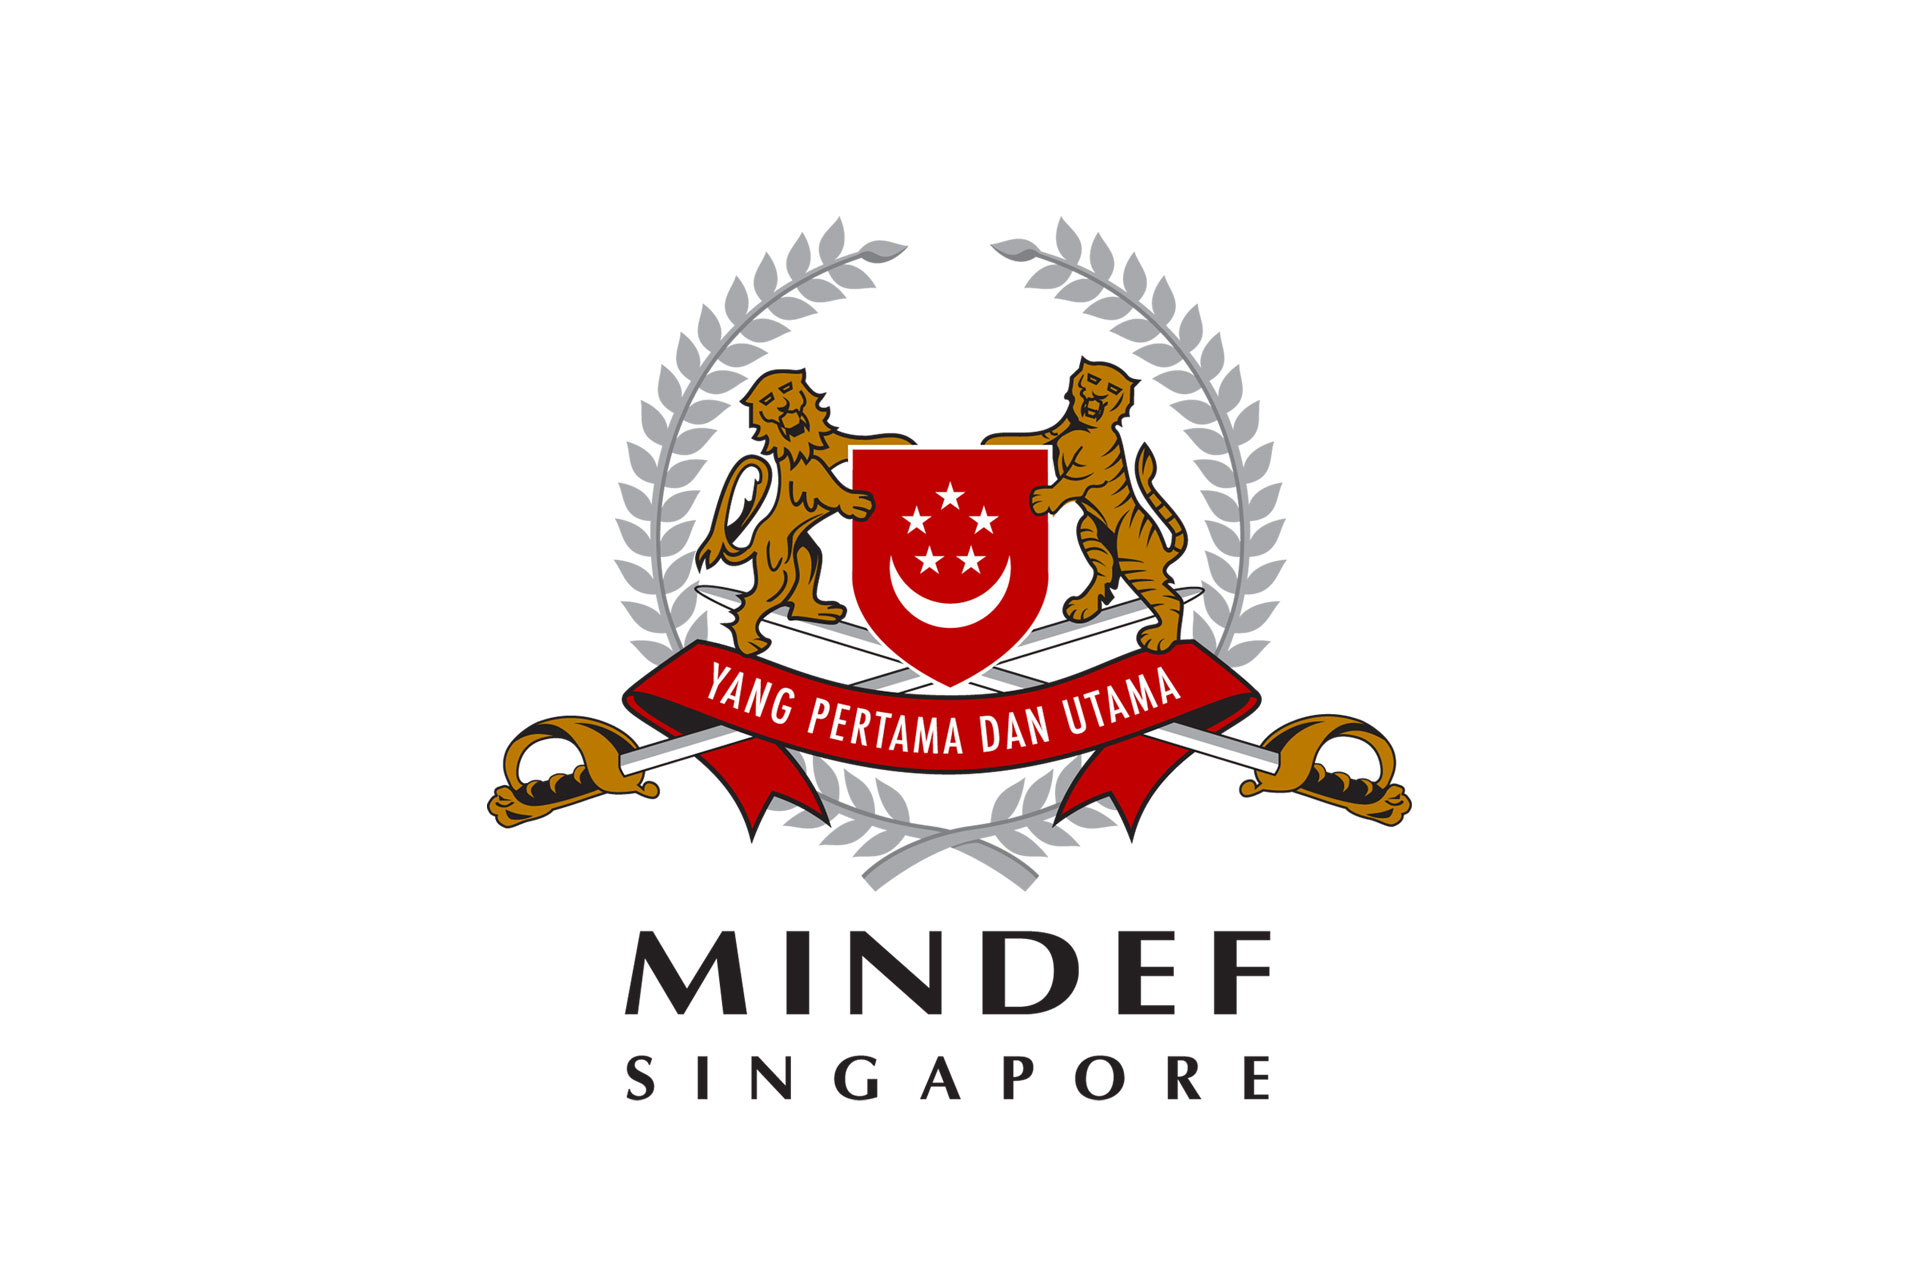 Image of MINDEF logo